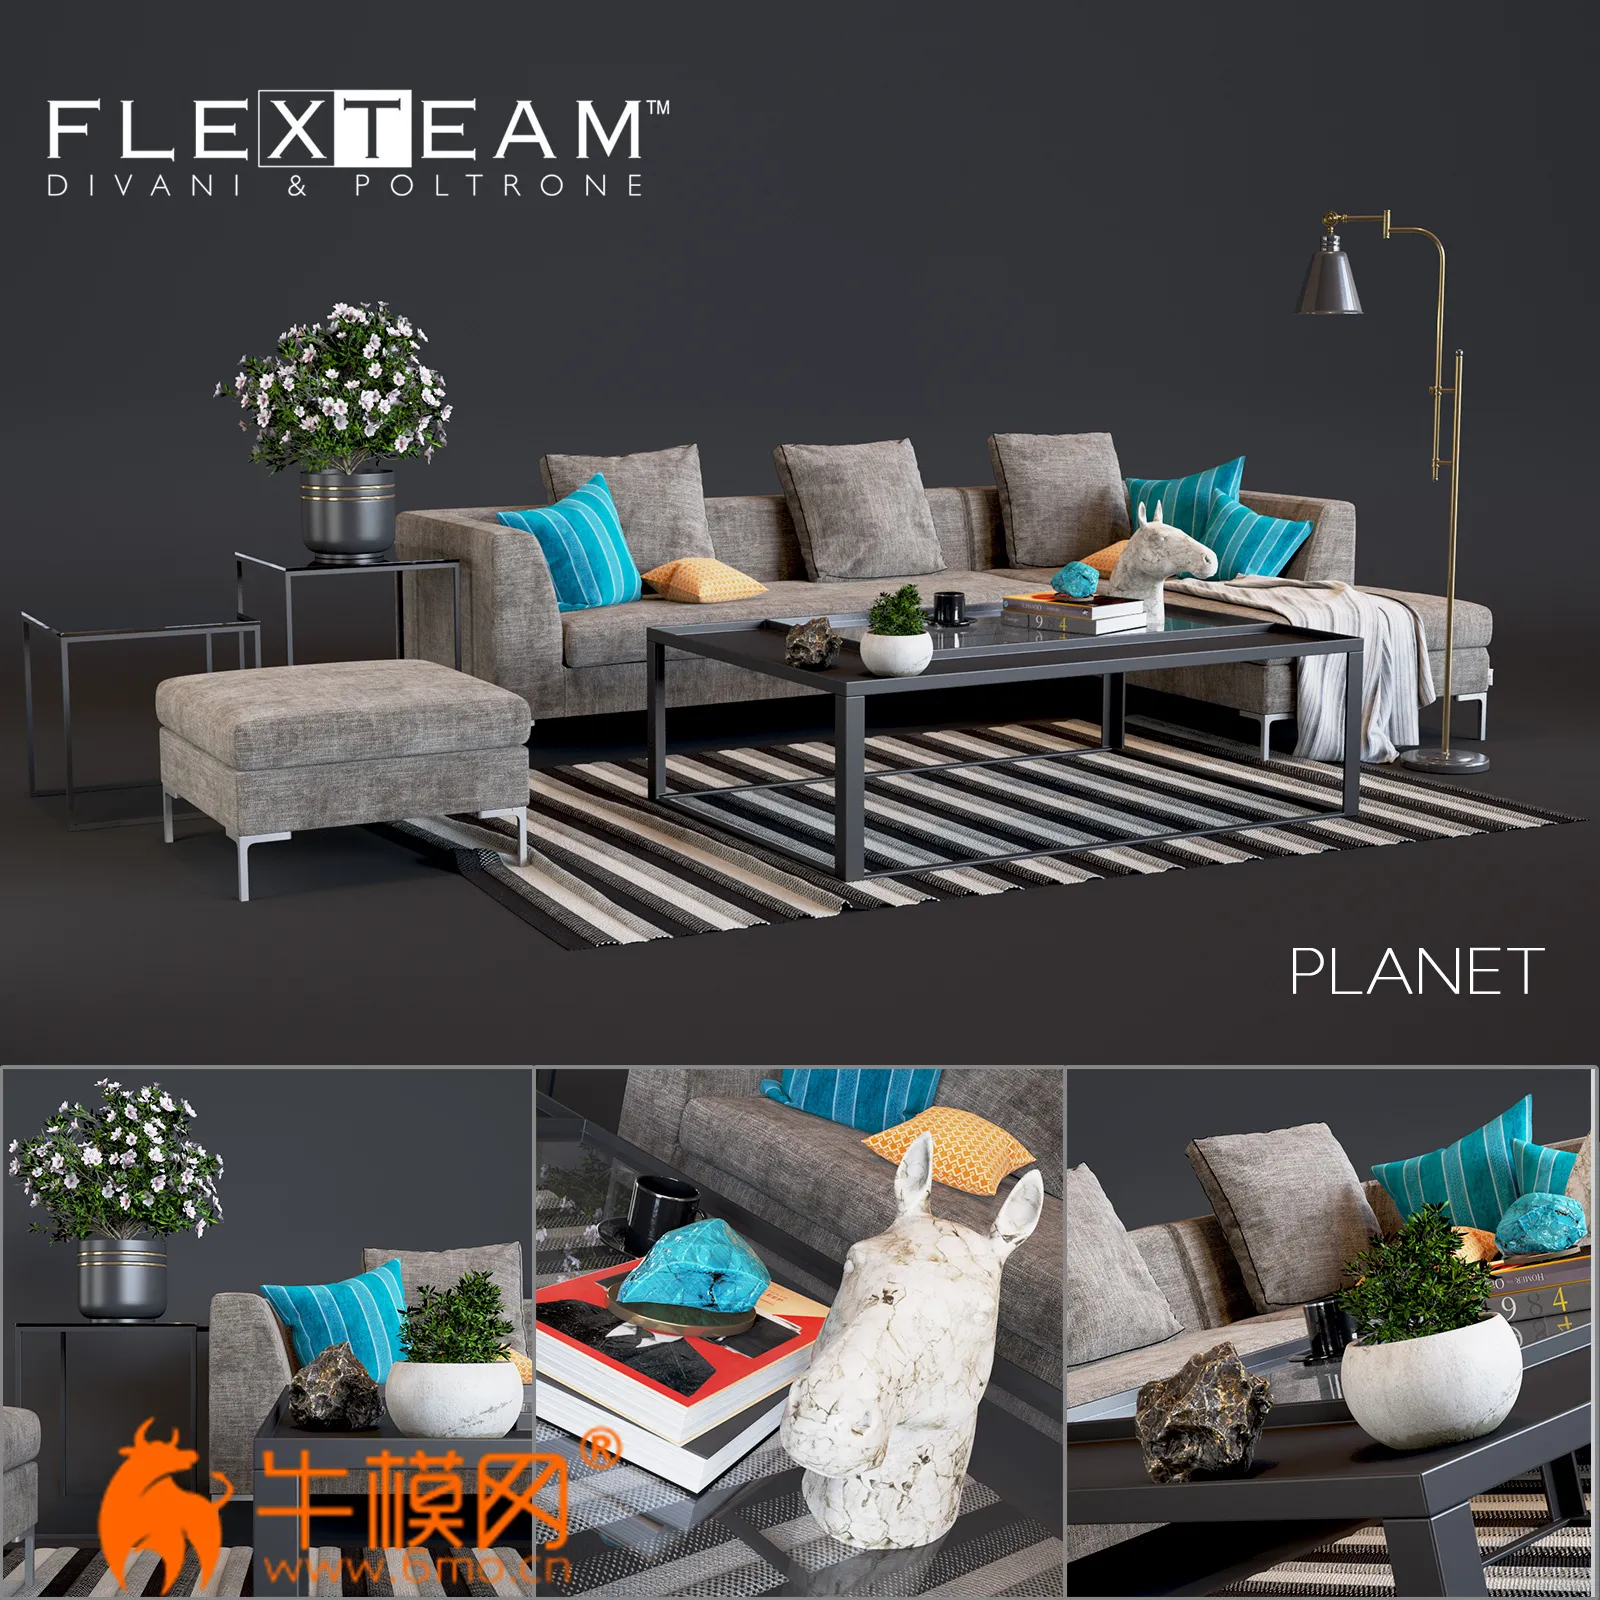 Flexteam Planet Sofa (max 2015, obj) – 5978